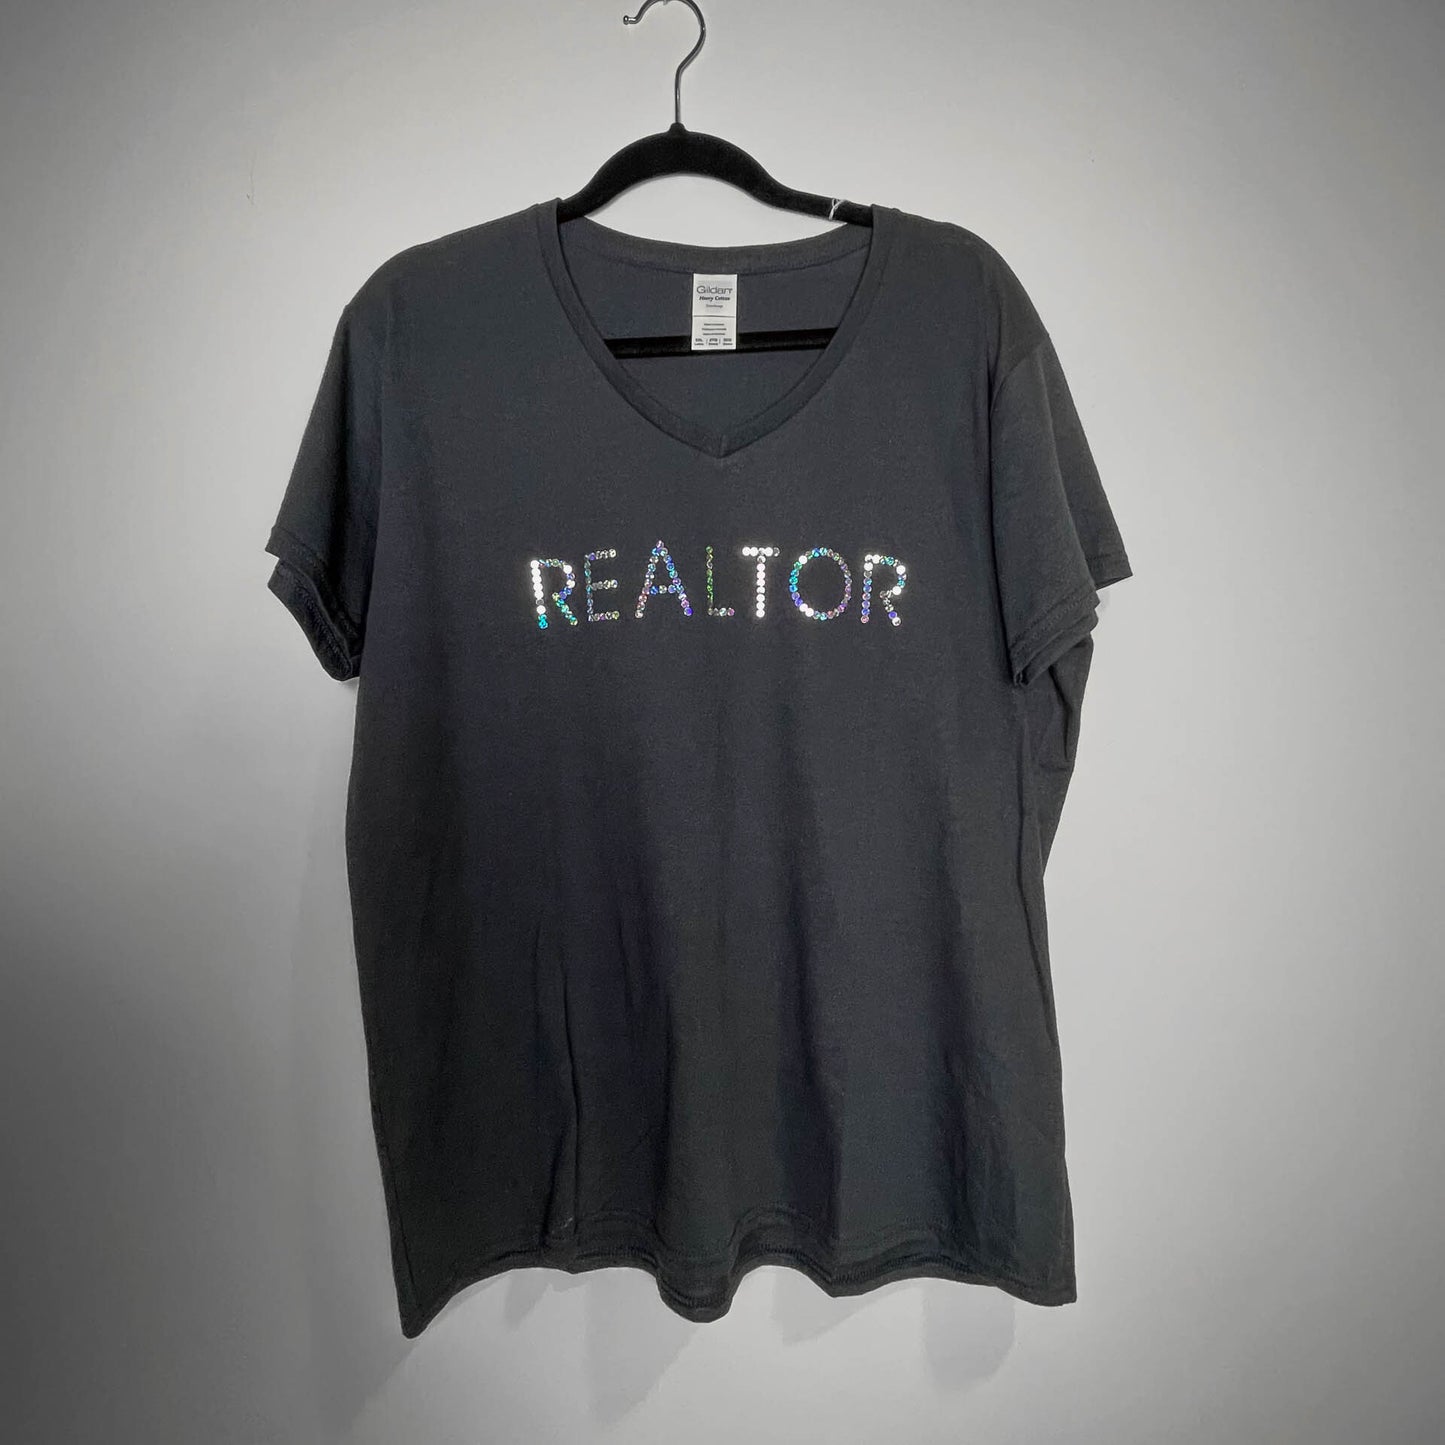 Realtor Womens T-Shirt R E A L T O R  Sequence V-Neck tee shirt (AZA2W NAV2W))